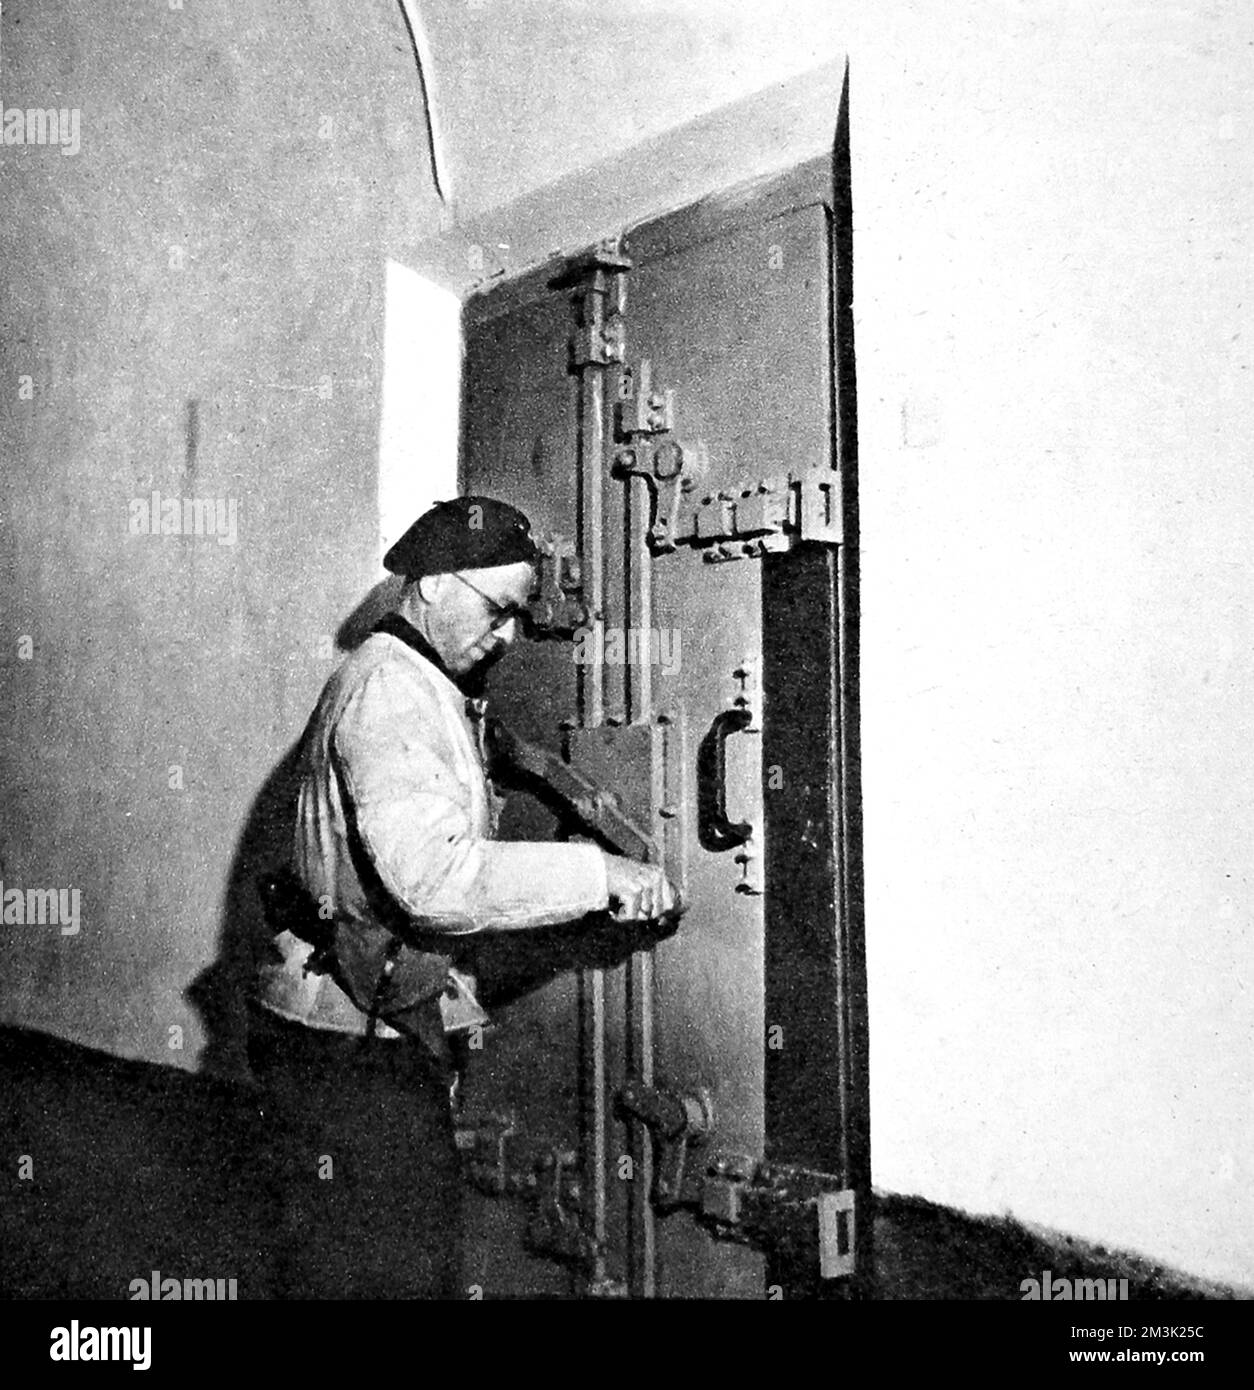 Foto mit der schalldichten, luftdichten, schweren Stahltür der Gaskammer in Breendonck Fort, Belgien, 1944. Diese Festung zwischen Brüssel und Antwerpen wurde von den Nazi-Sicherheitsdiensten während ihrer Besetzung Belgiens zwischen 1940 und 44 genutzt. Datum: 1944 Stockfoto